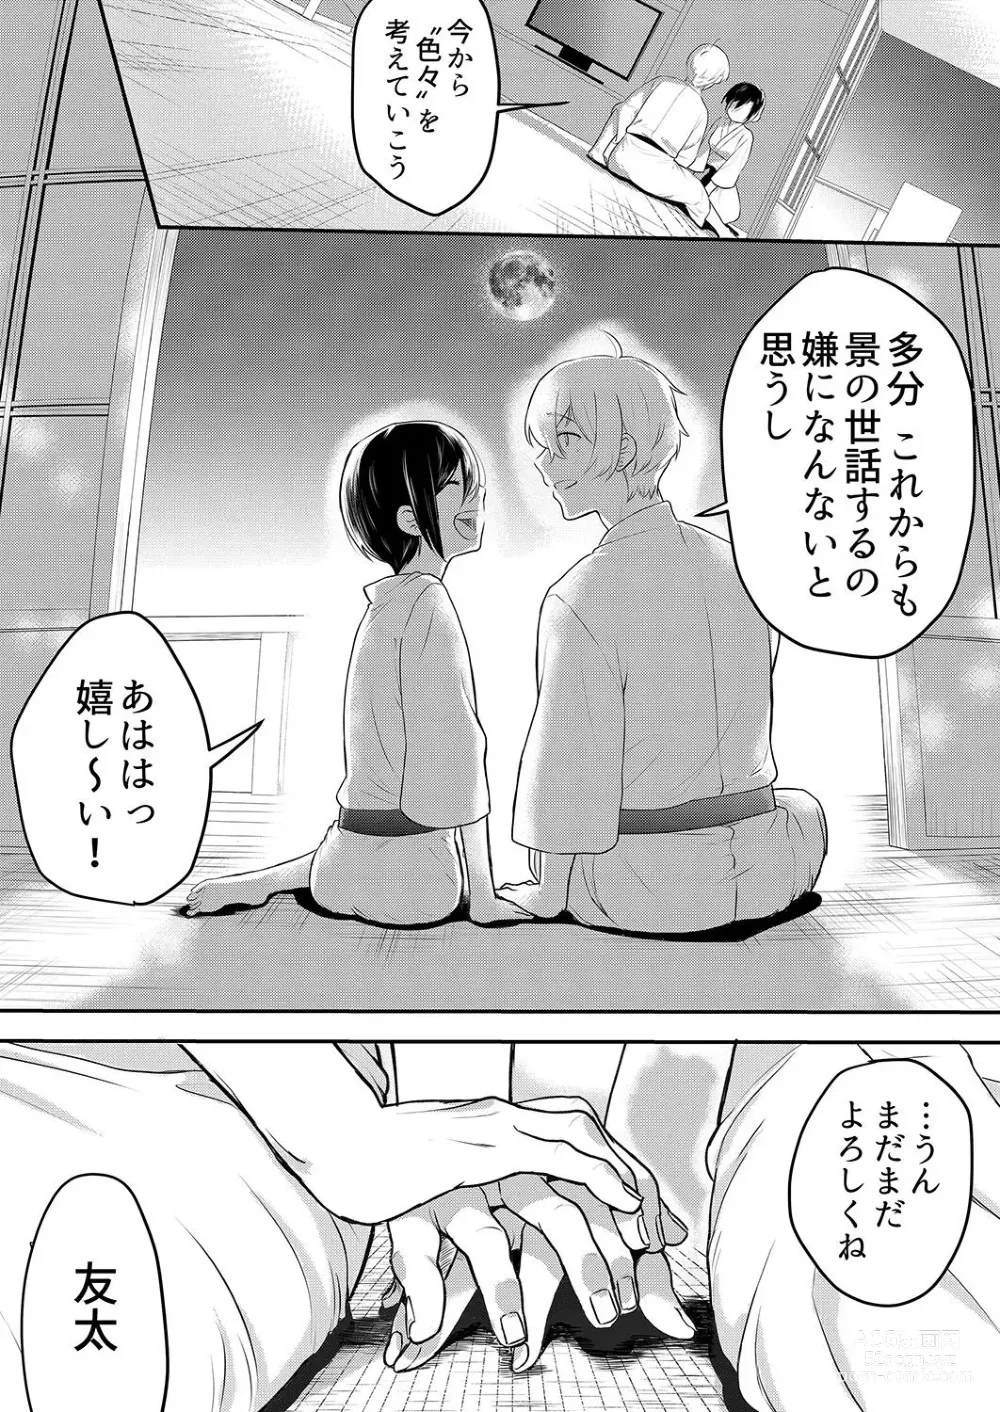 Page 146 of manga Hageshii SEX de Motokare o Wasuresasete ~ Yotta Furi shite Izanau Ane